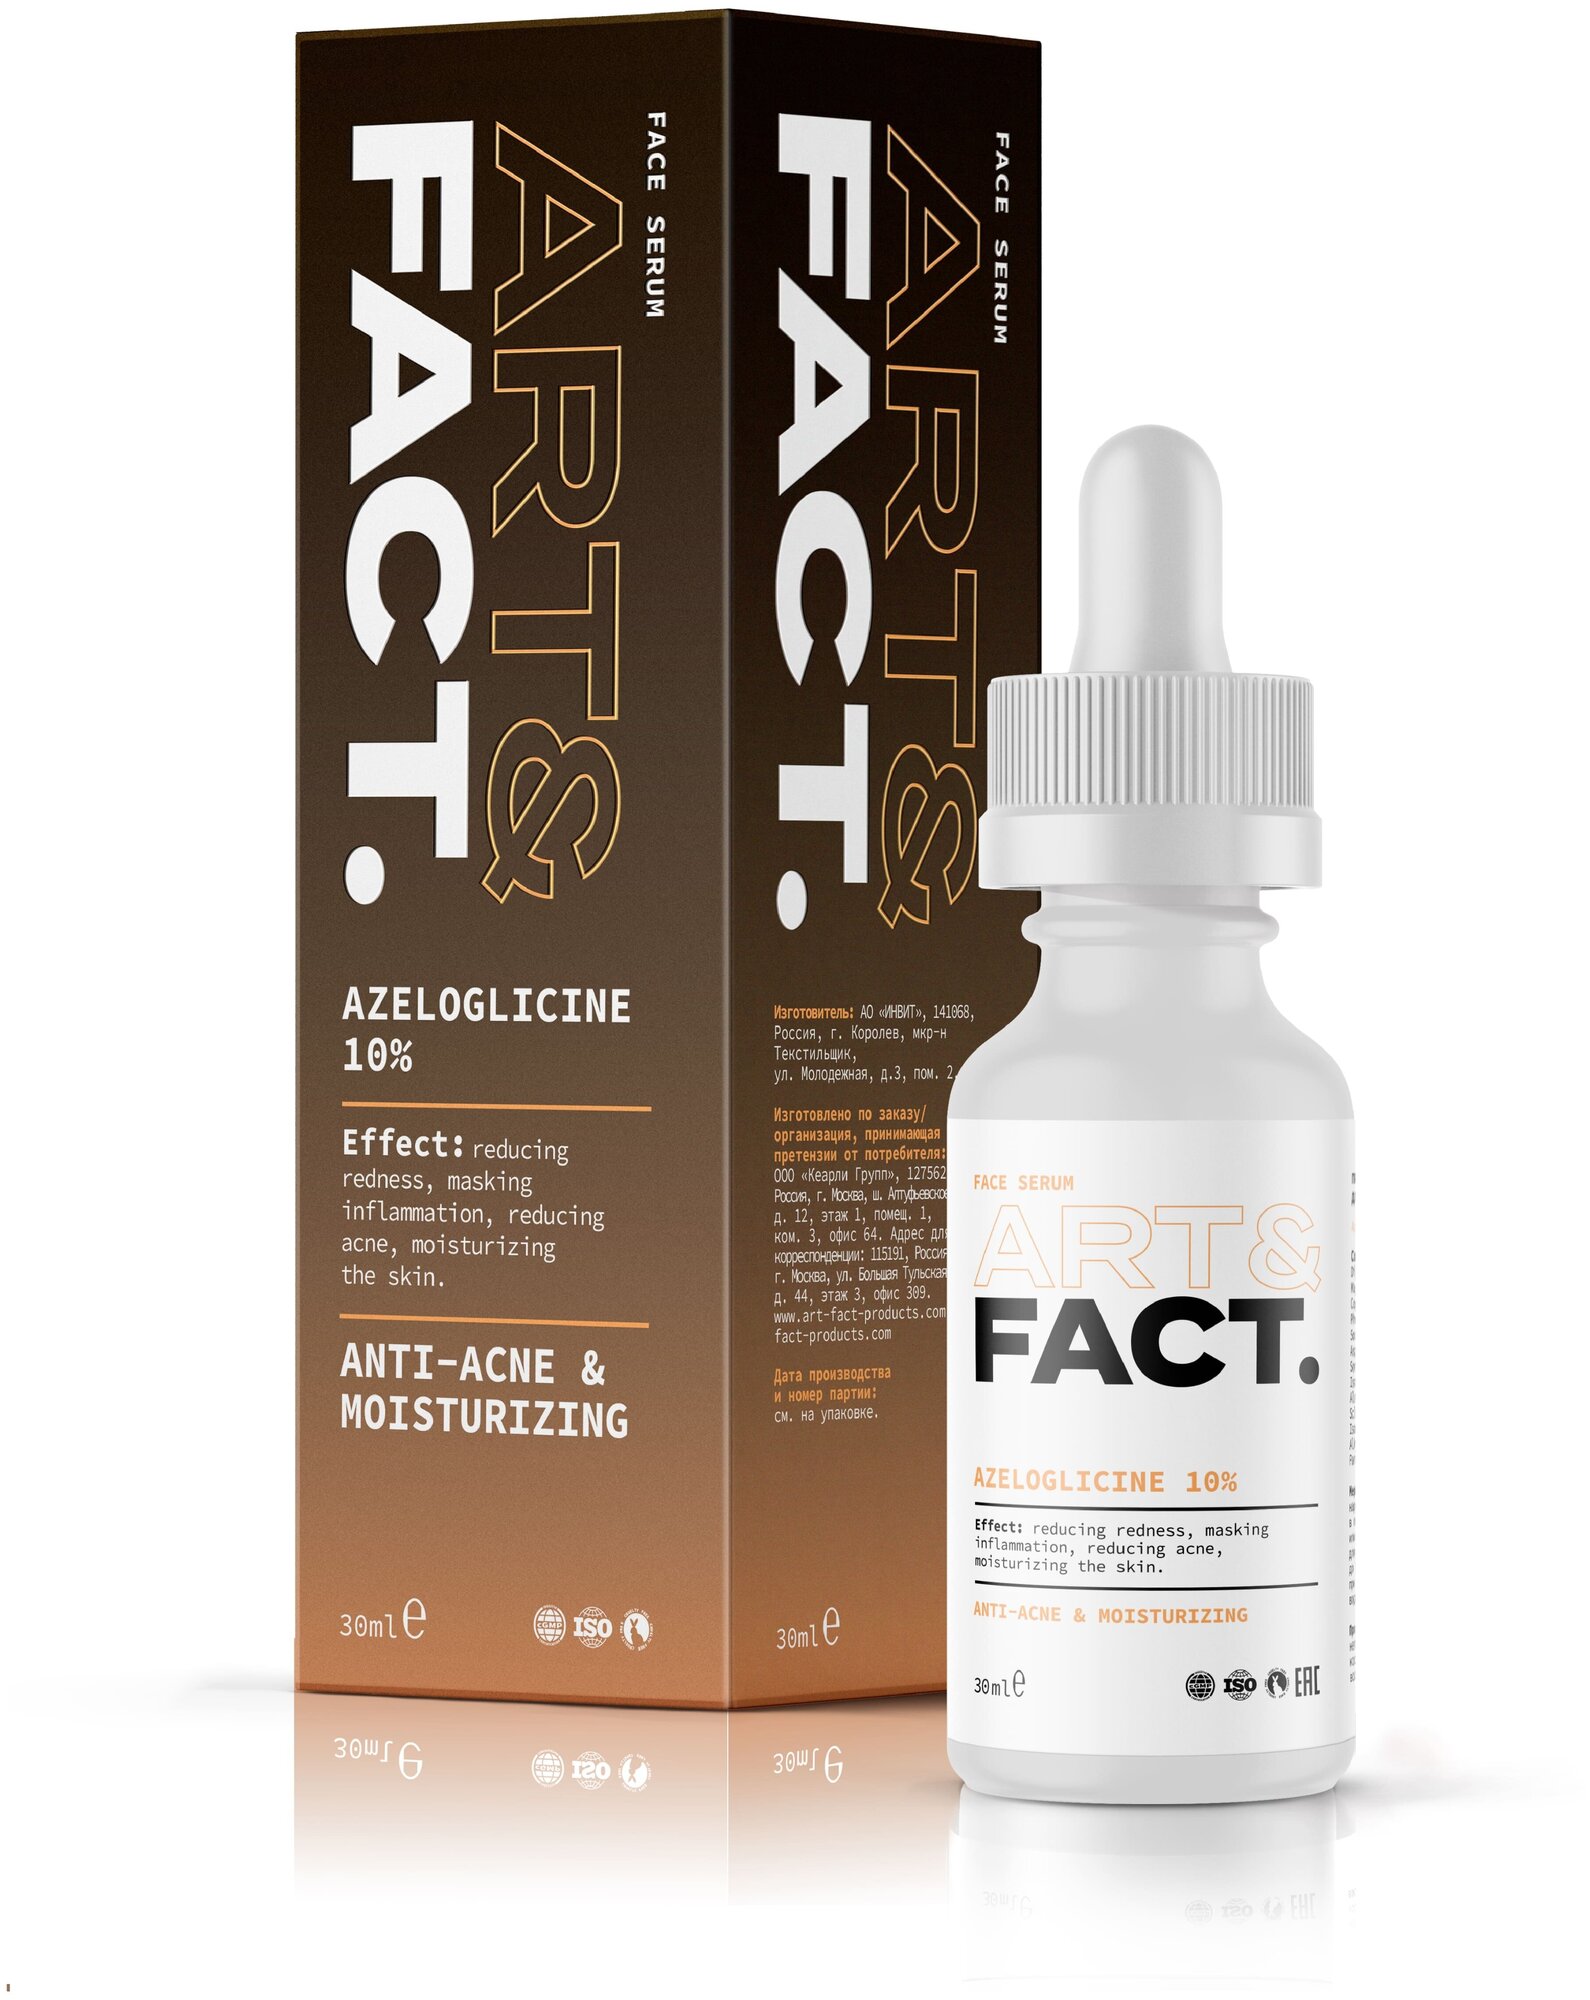 ART&FACT. / Противовоспалительная анти-акне сыворотка для лица с азелоглицином 10%